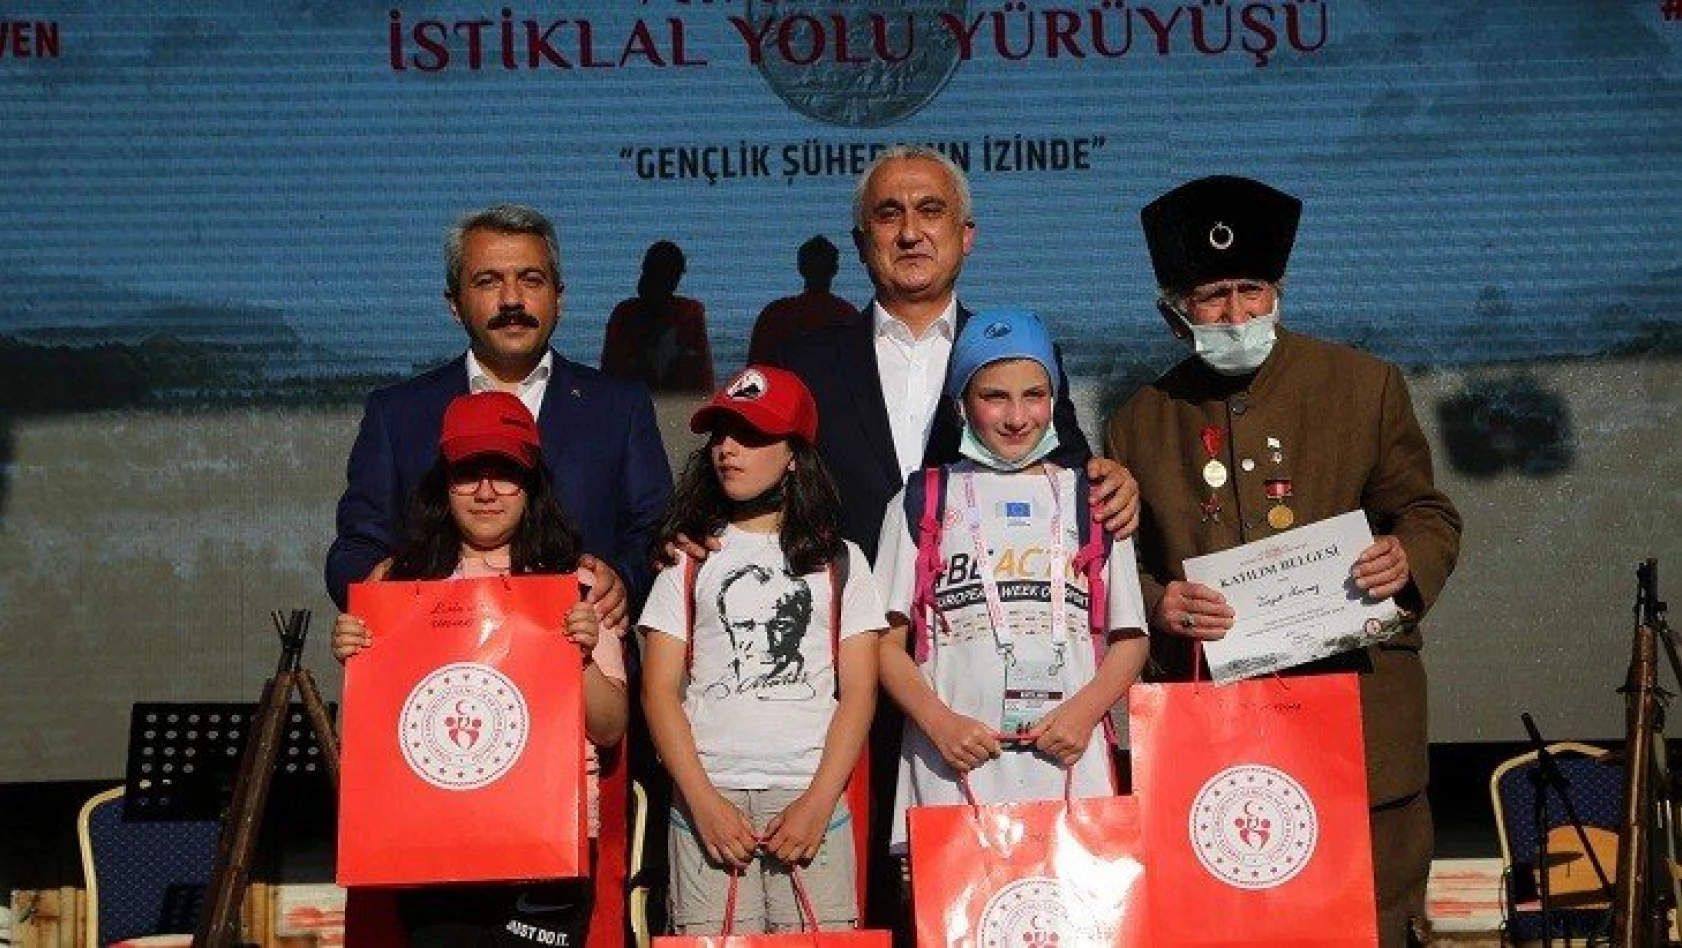 Kastamonu'da 4 gün süren 'Atatürk ve İstiklal Yolu Yürüyüşü' sona erdi